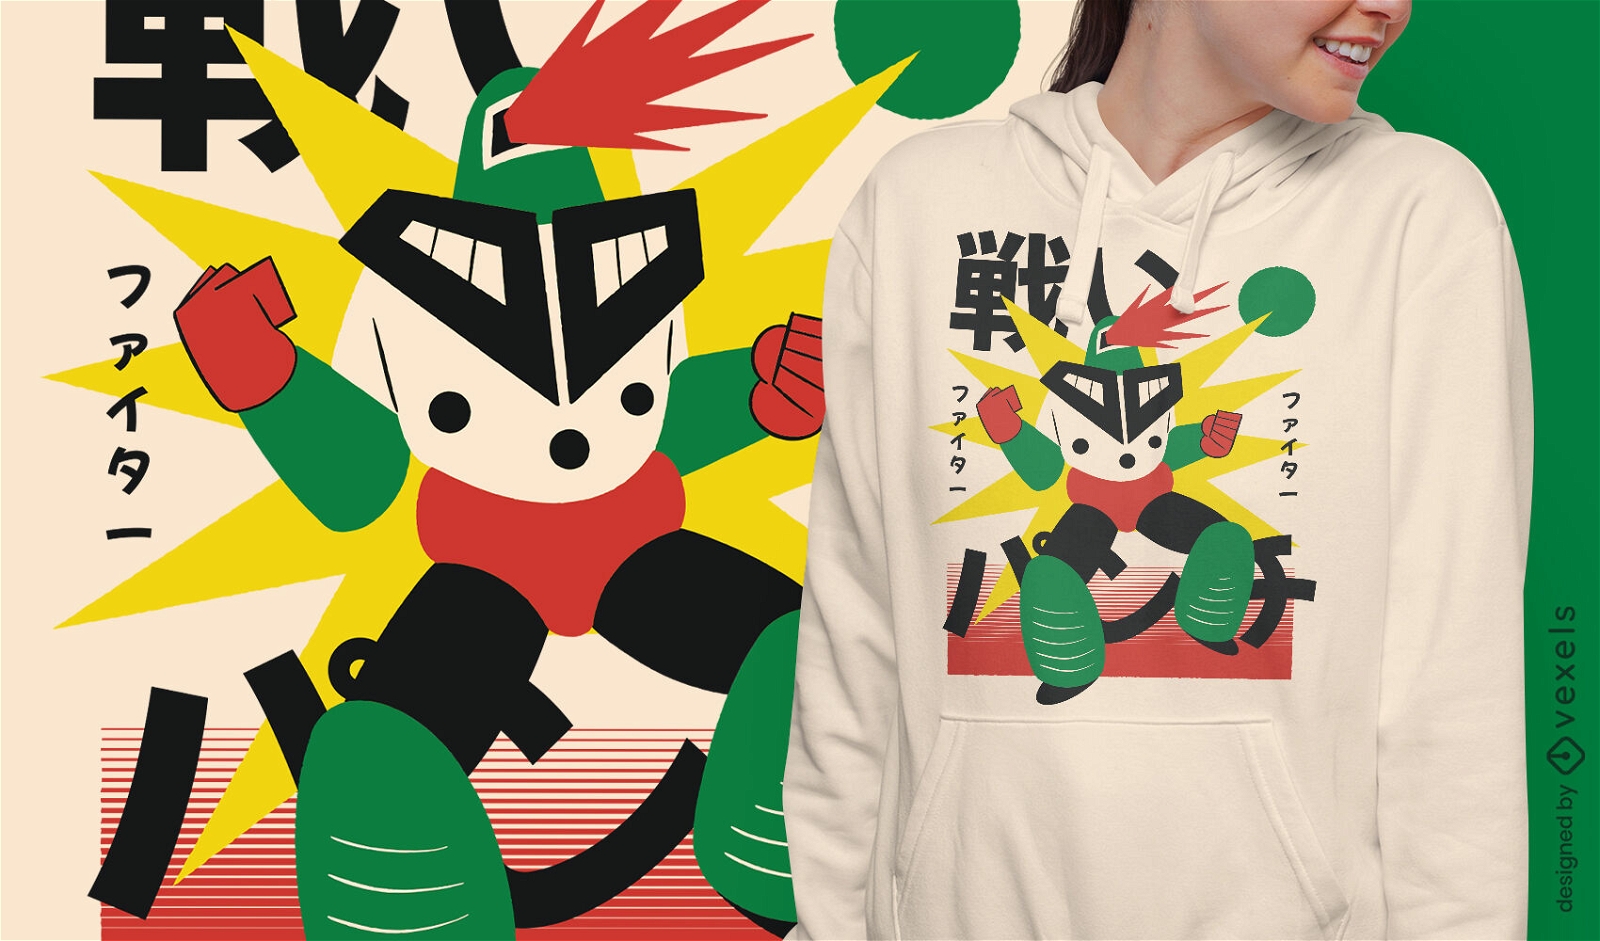 Dise?o de camiseta de guerrero de fuego robot japon?s